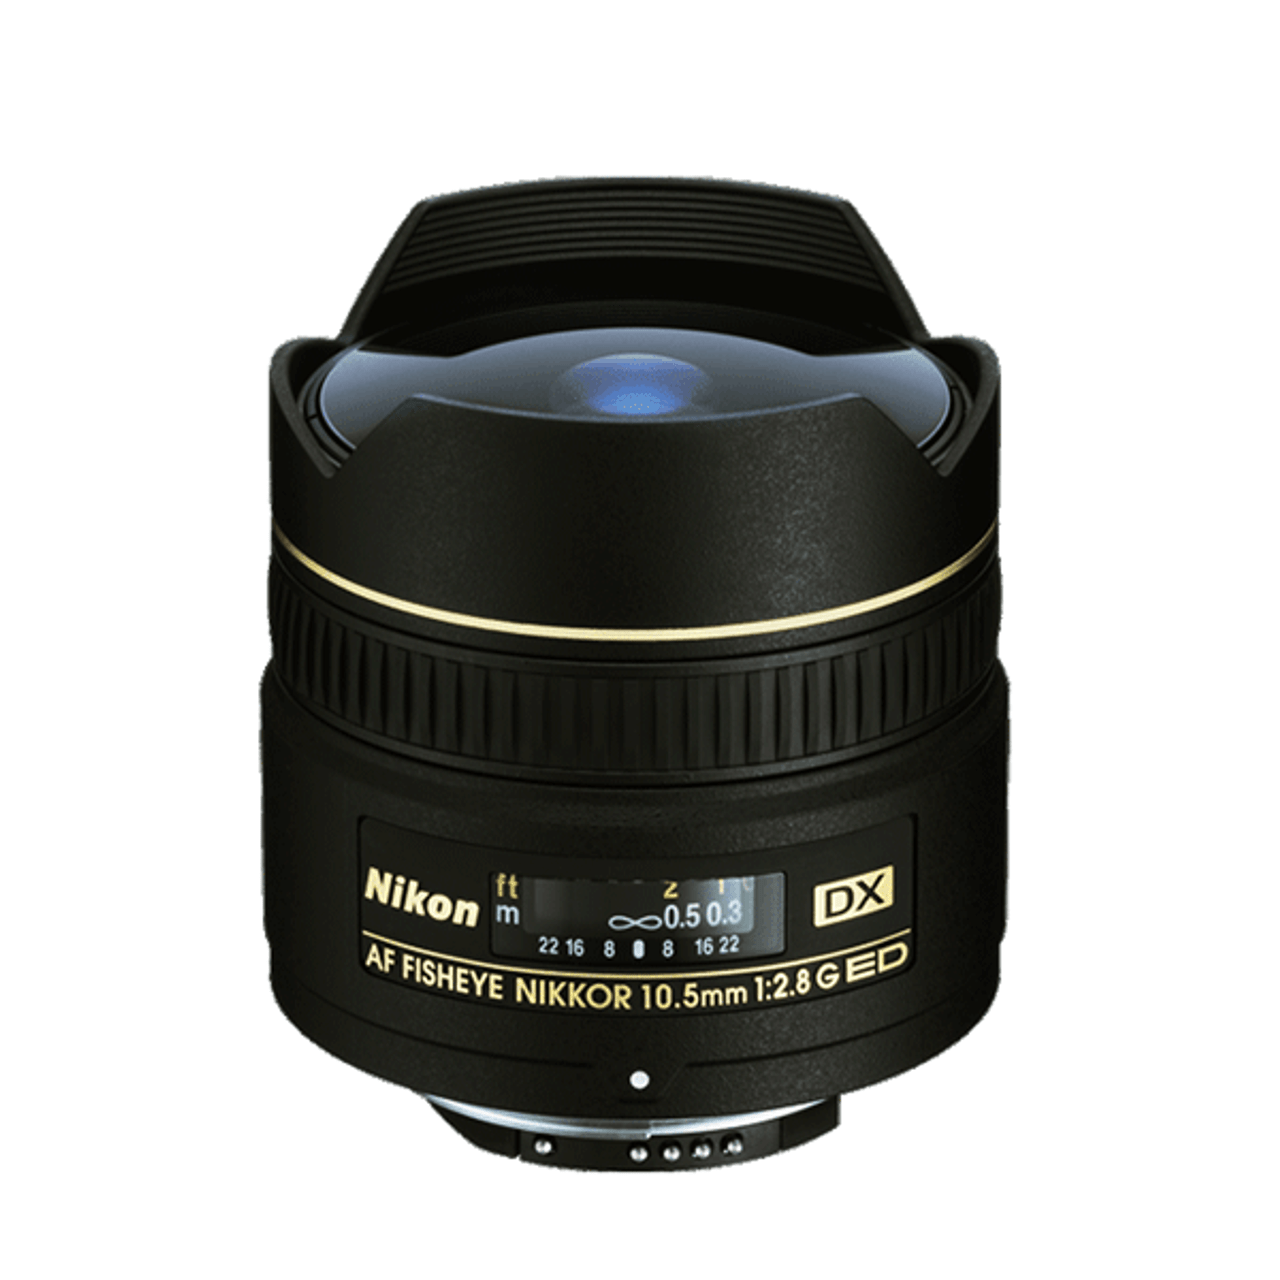 Nikon AF 10.5mm F2.8G DX ED Fisheye Nikkor